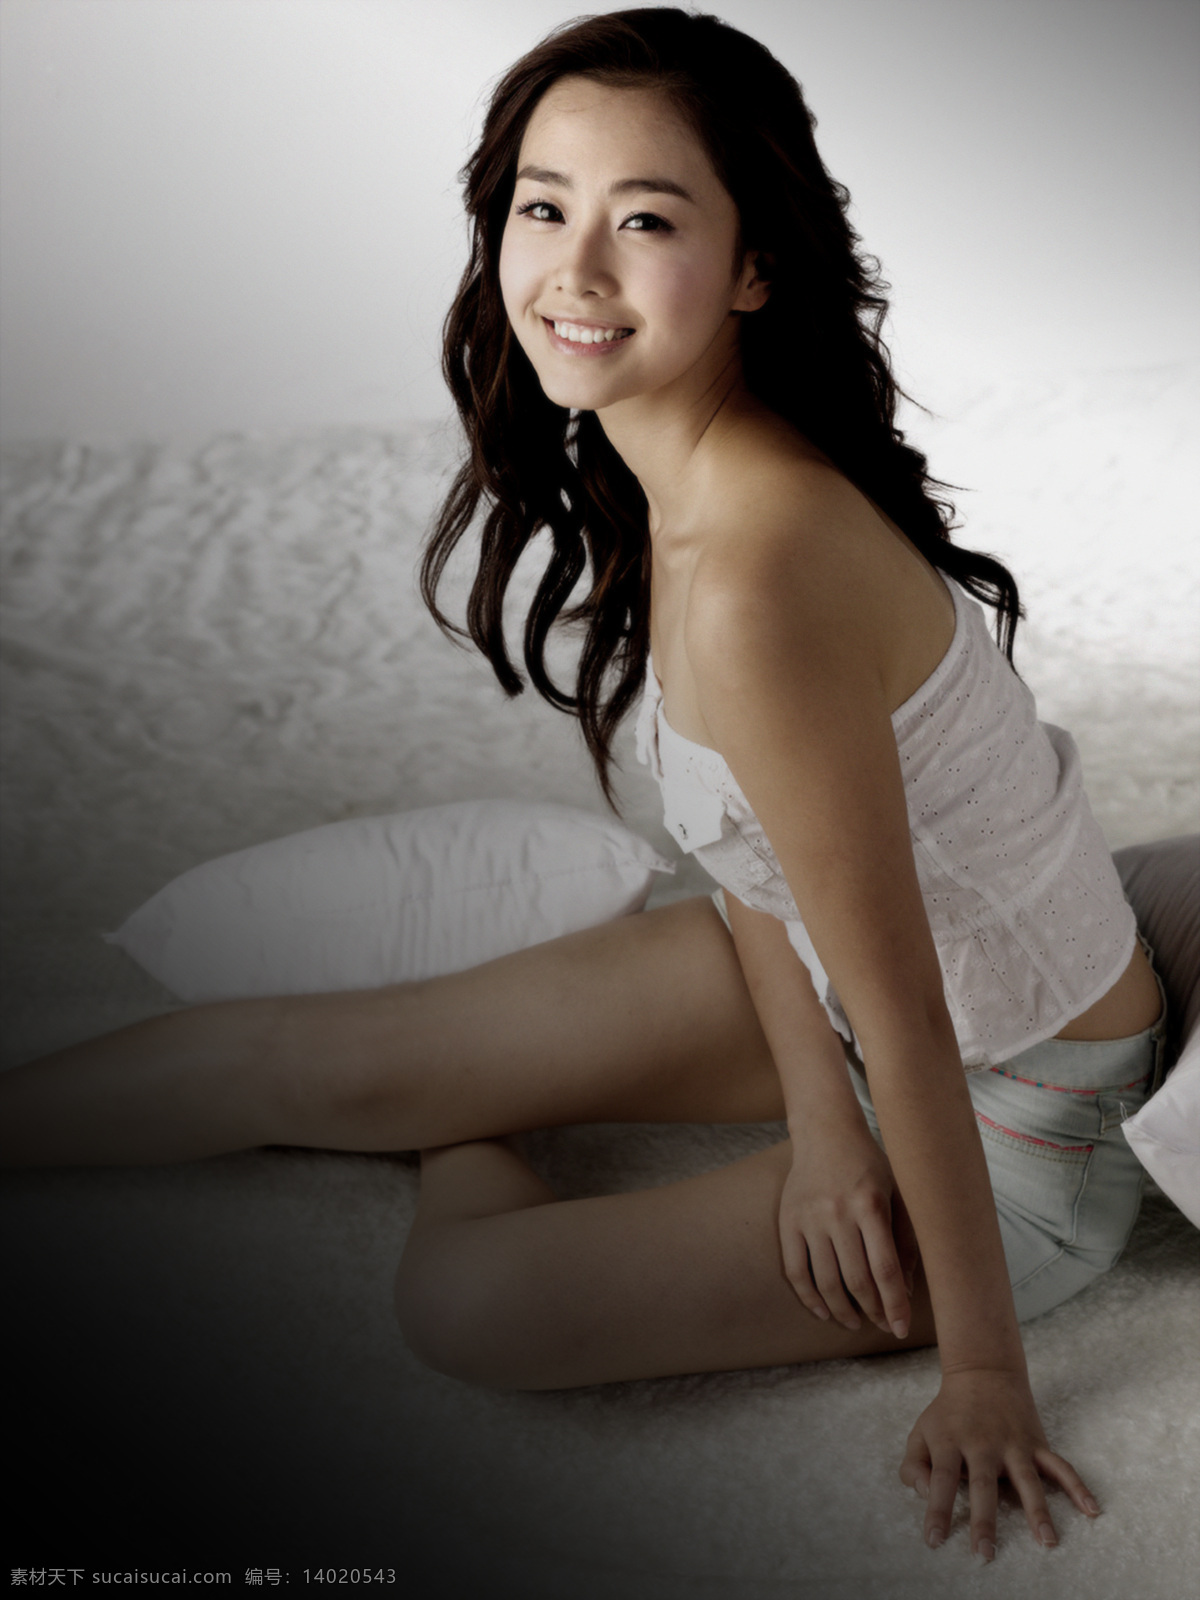 亚洲美女写真 亚洲 美女 写真 韩国 气质 美丽 漂亮 白领 韩国人气mm 亚洲美女 写真集 人物摄影 人物图库